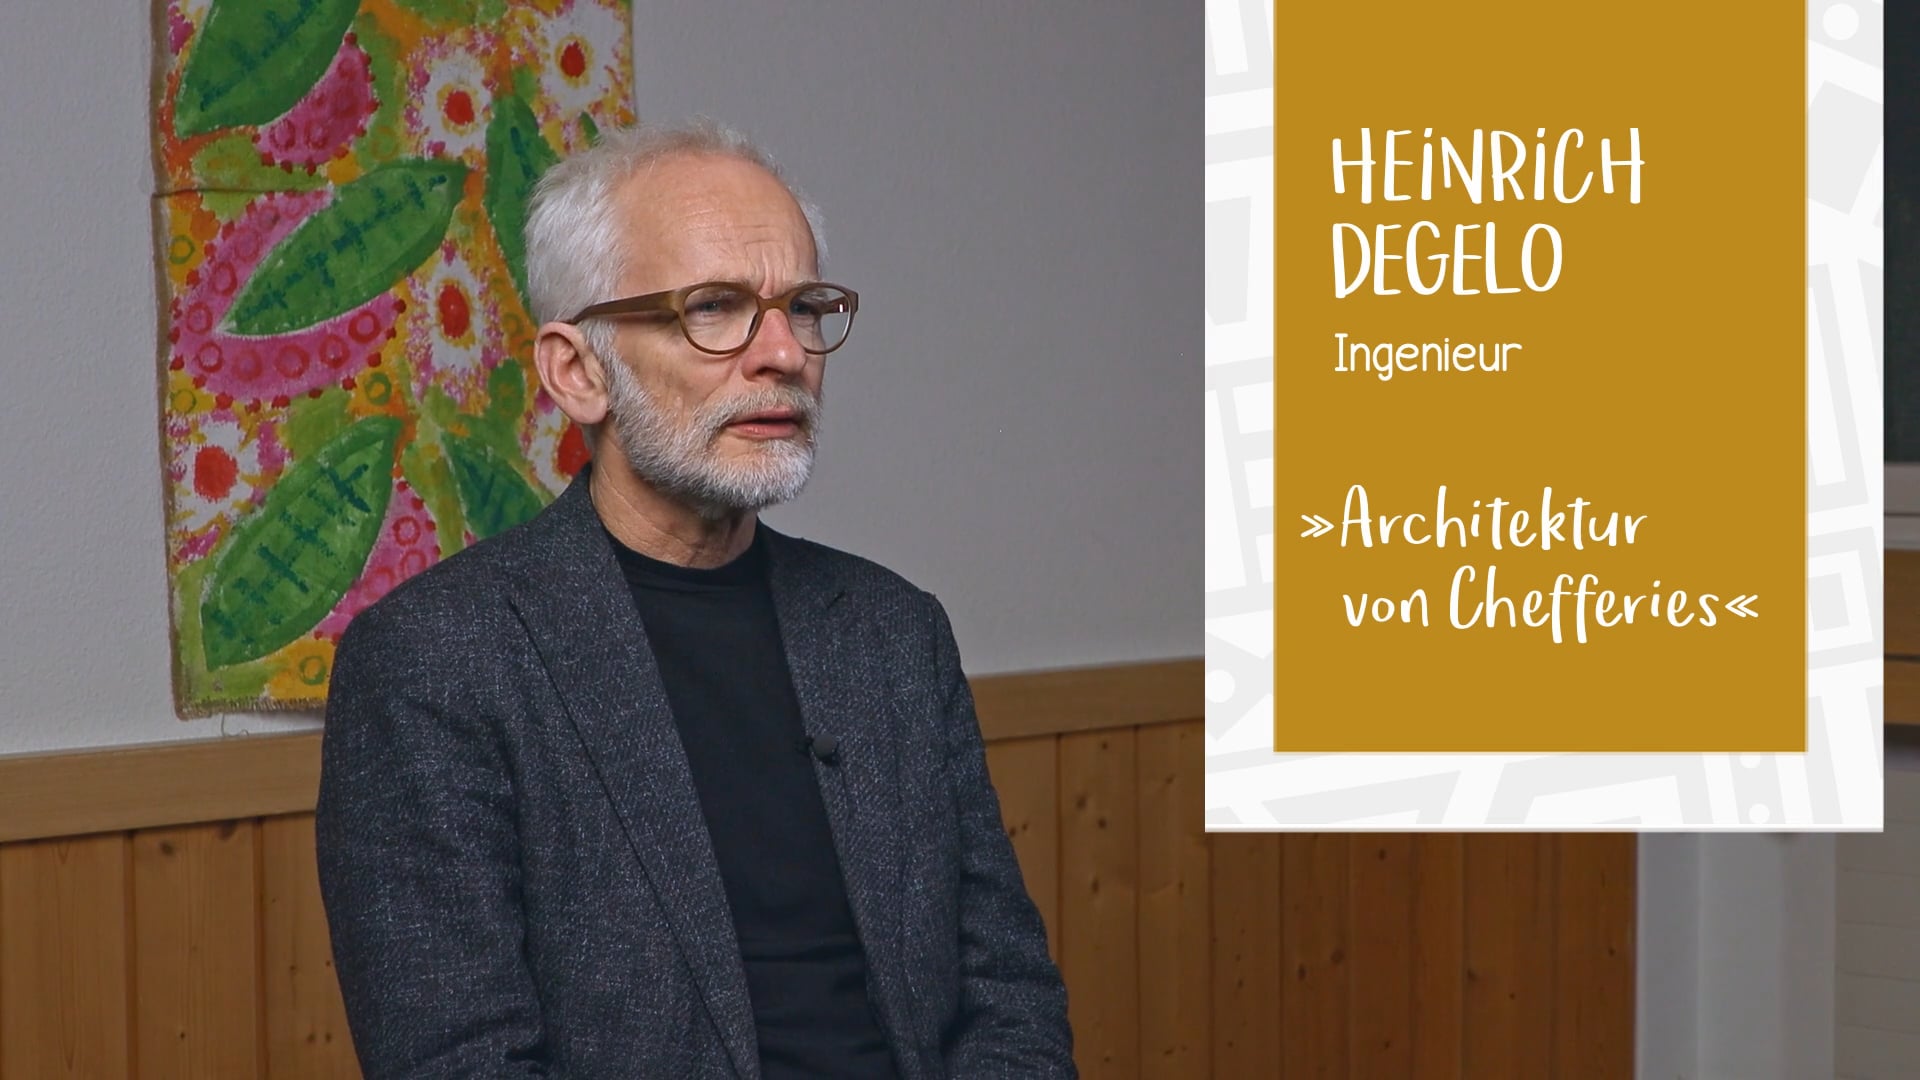 Heinrich Degelo – Architektur in Bandrefam